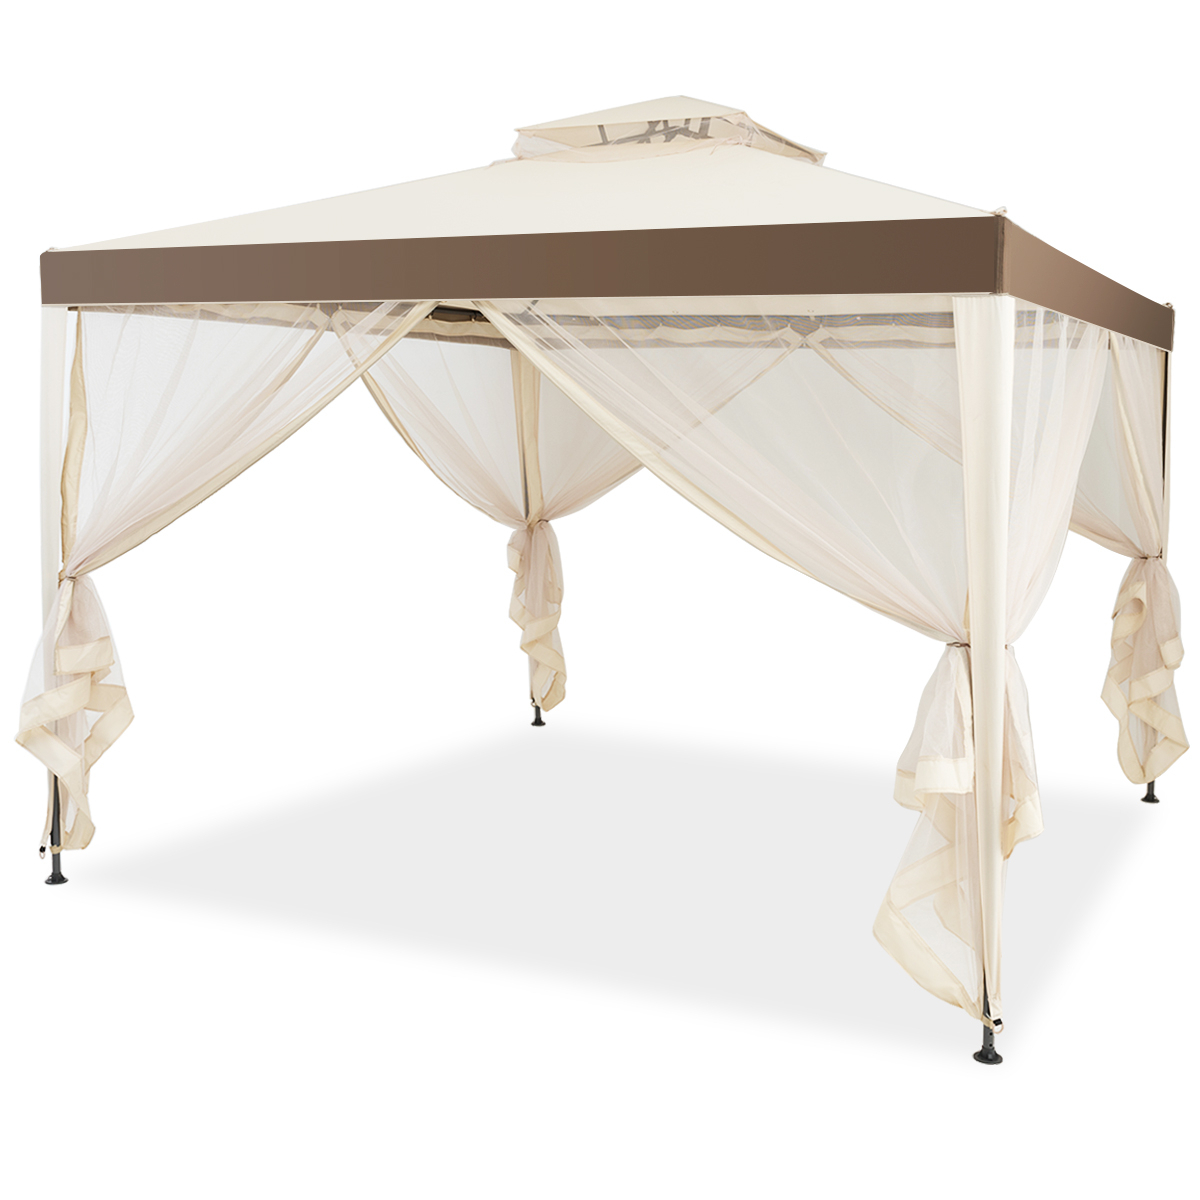 10âx 10â 2-tier Canopy Gazebo Tent Outdoor Netting Picnic Party Sun Shade - Coffee